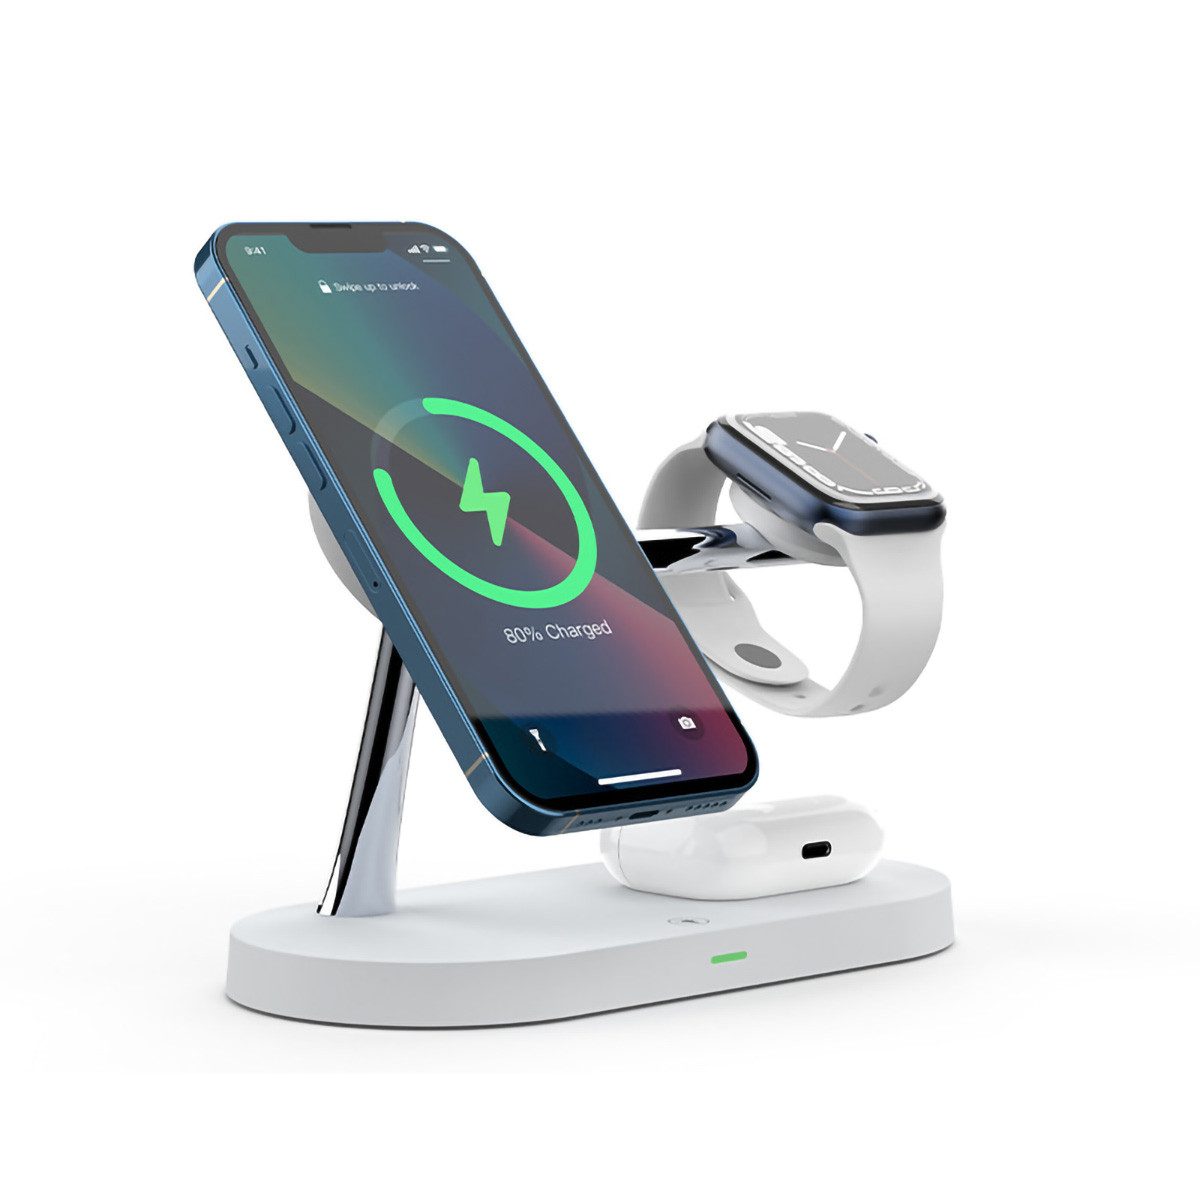 yozhiqu Smartphone-Dockingstation Magnetisches drahtloses Ladegerät für Apple-Geräte - 5 in 1 Design, Schnell, einfach und perfekt kompatibel mit iPhone und iWatch-Serie